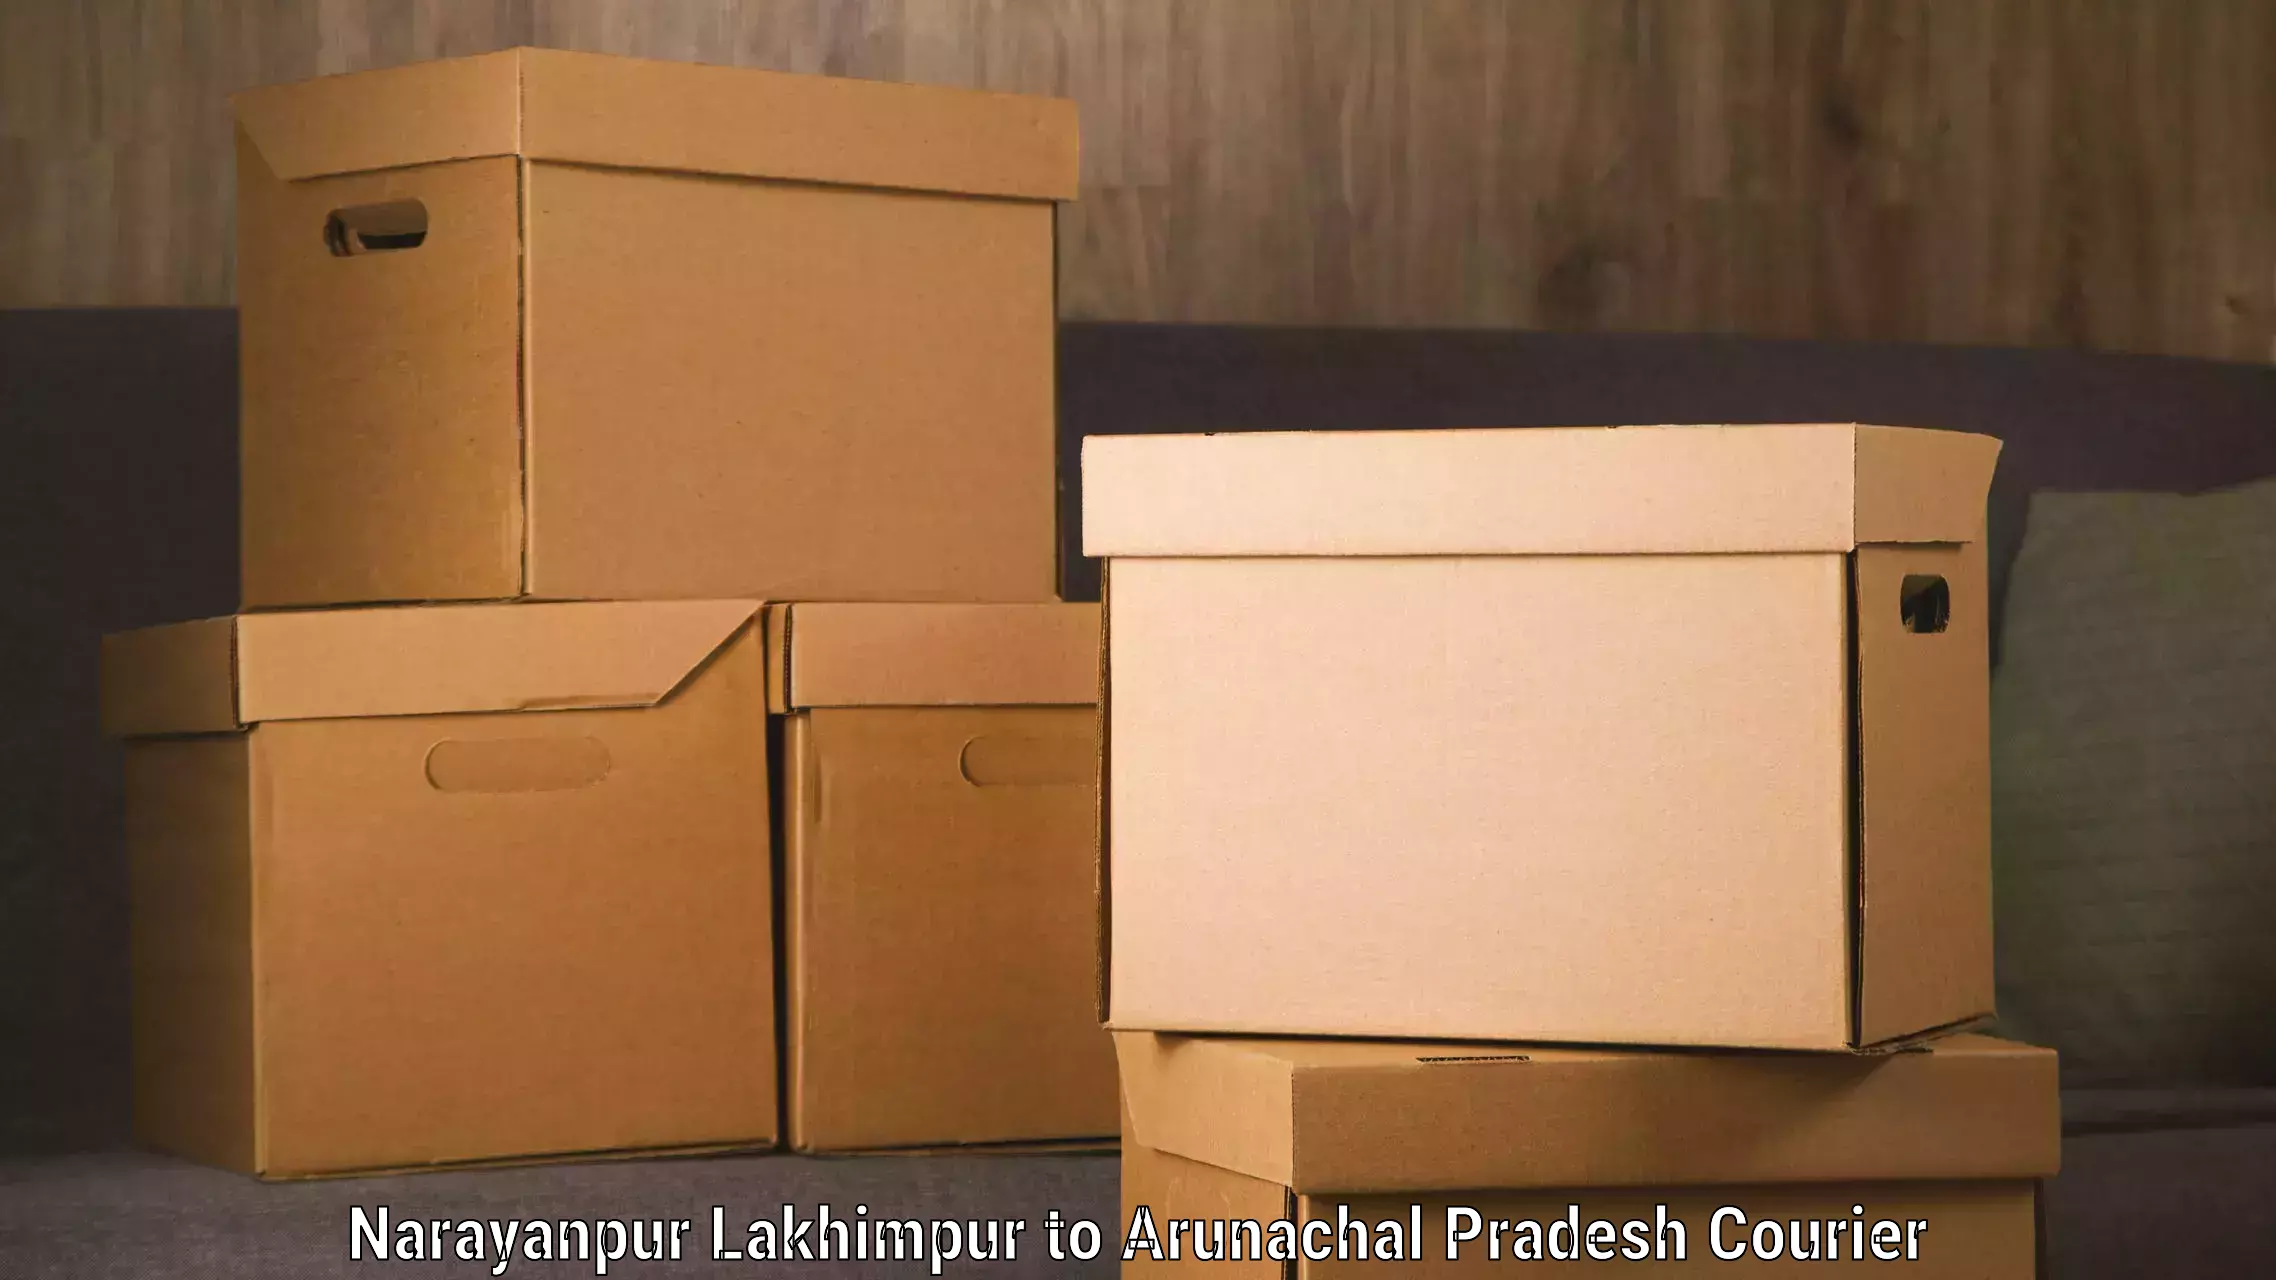 Luggage transport company Narayanpur Lakhimpur to Arunachal Pradesh